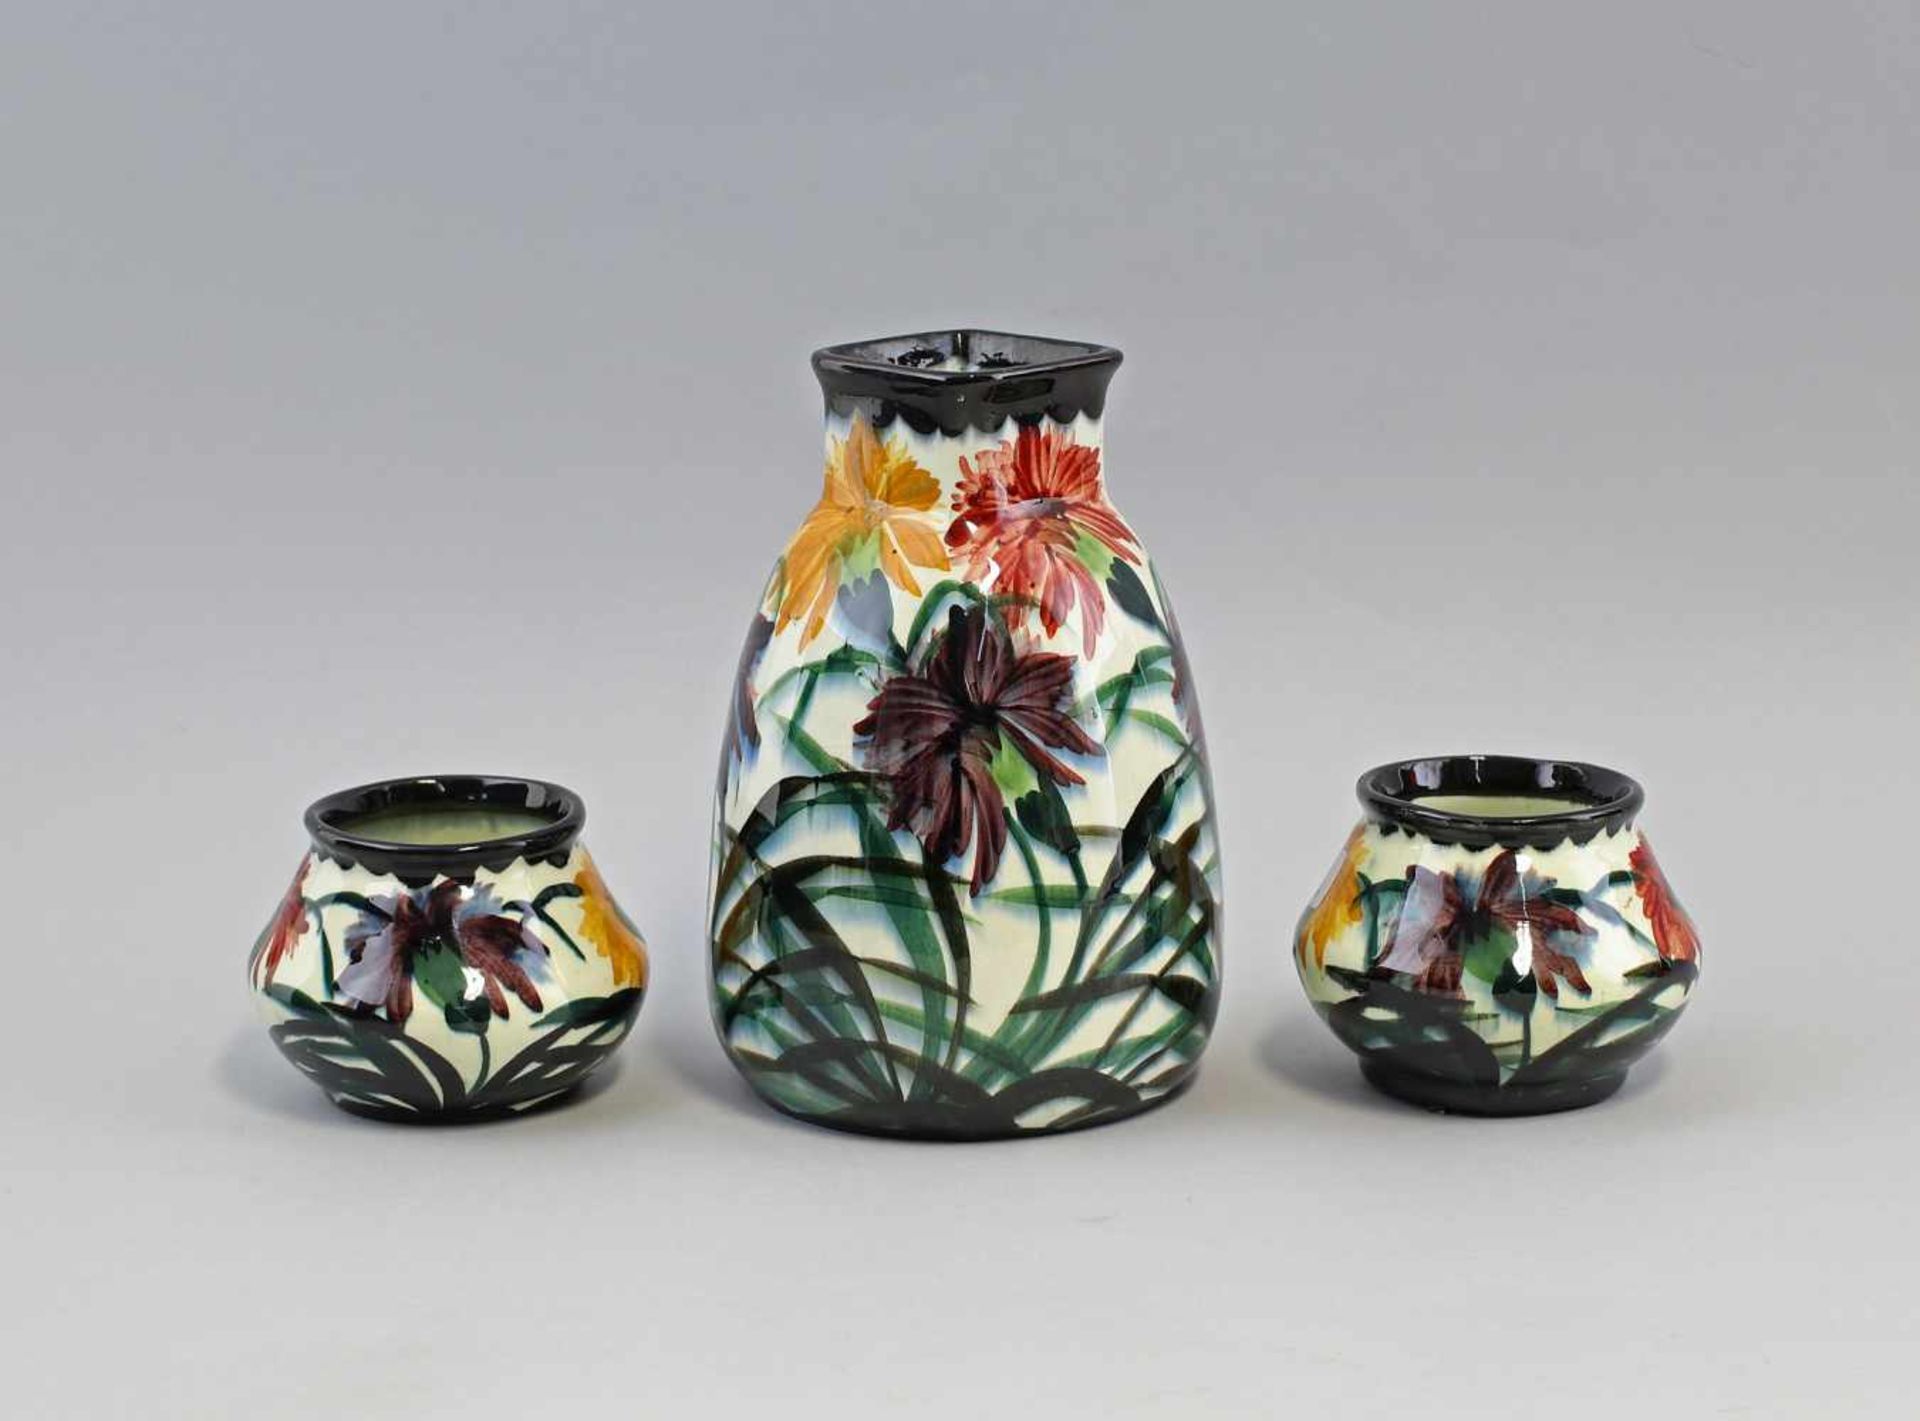 3 Vasen - Set Schramberg um 1930, Mod.-Nr. 2537 und 2608, Form u. Dekor entsprechen Schramberger